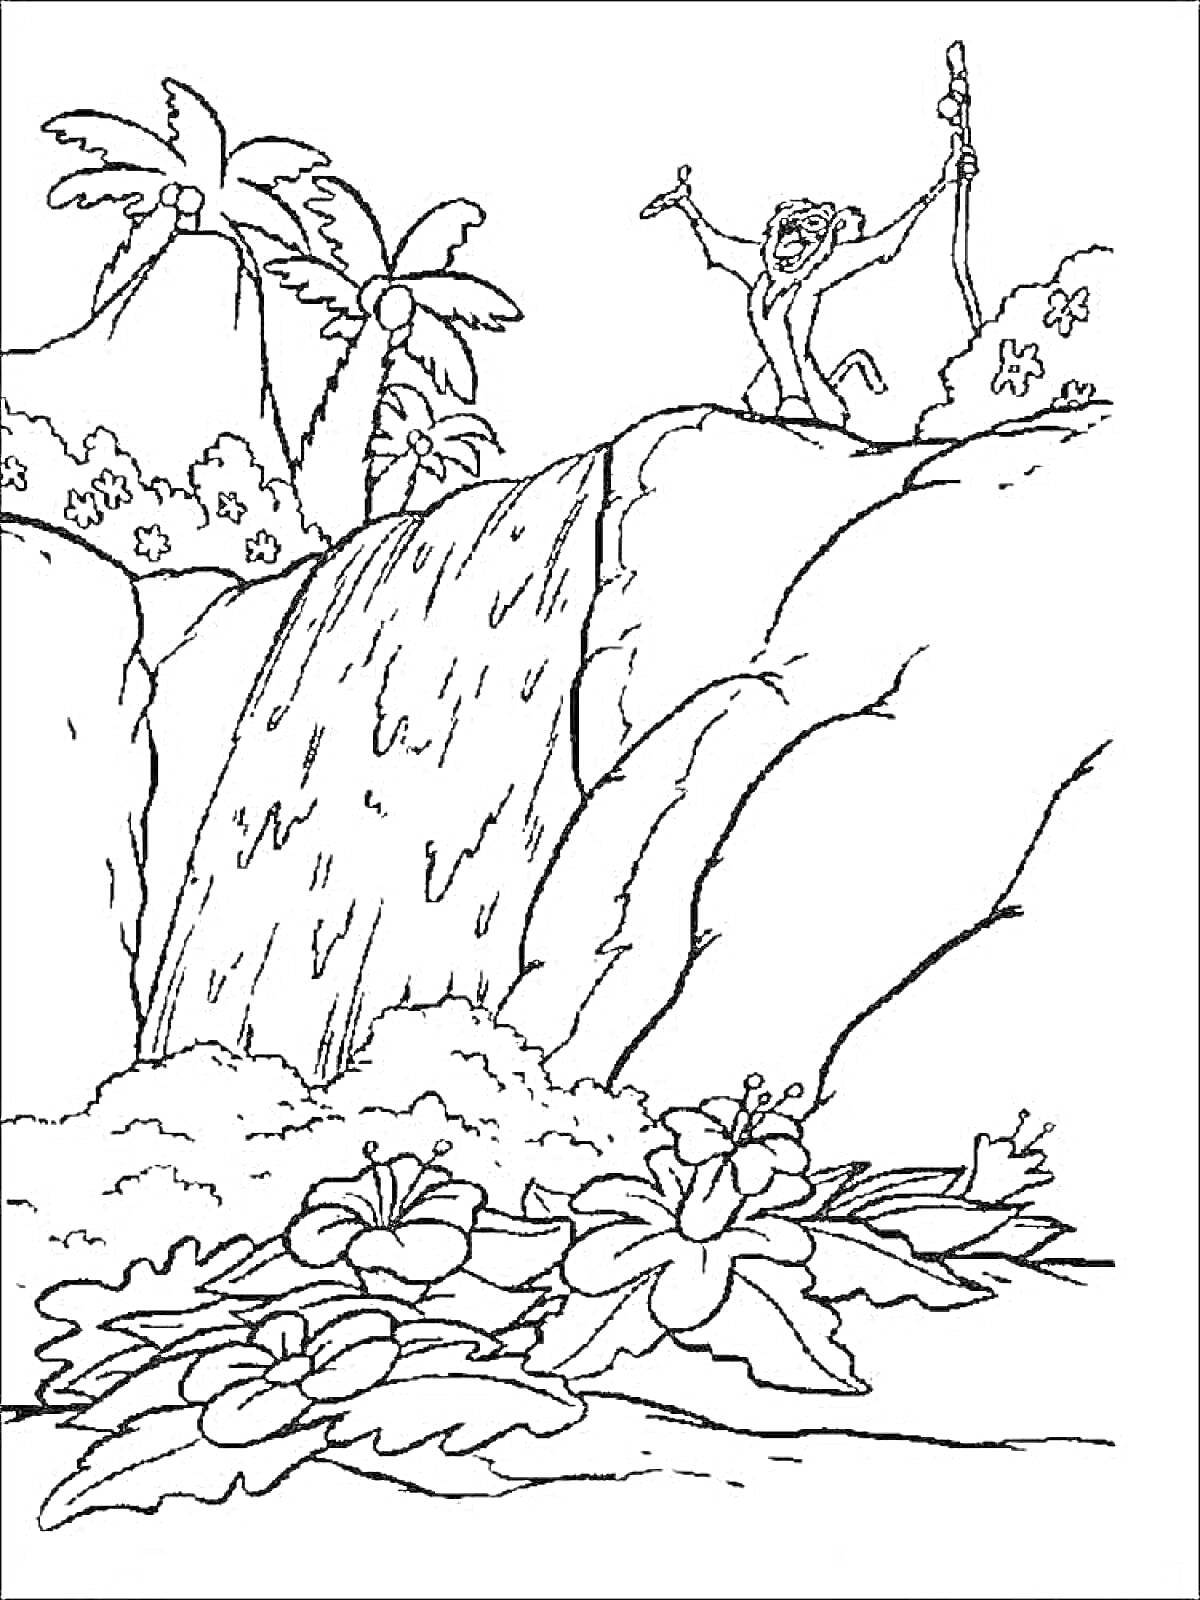 Водопад в тропическом лесу с обезьяной и цветами на переднем плане